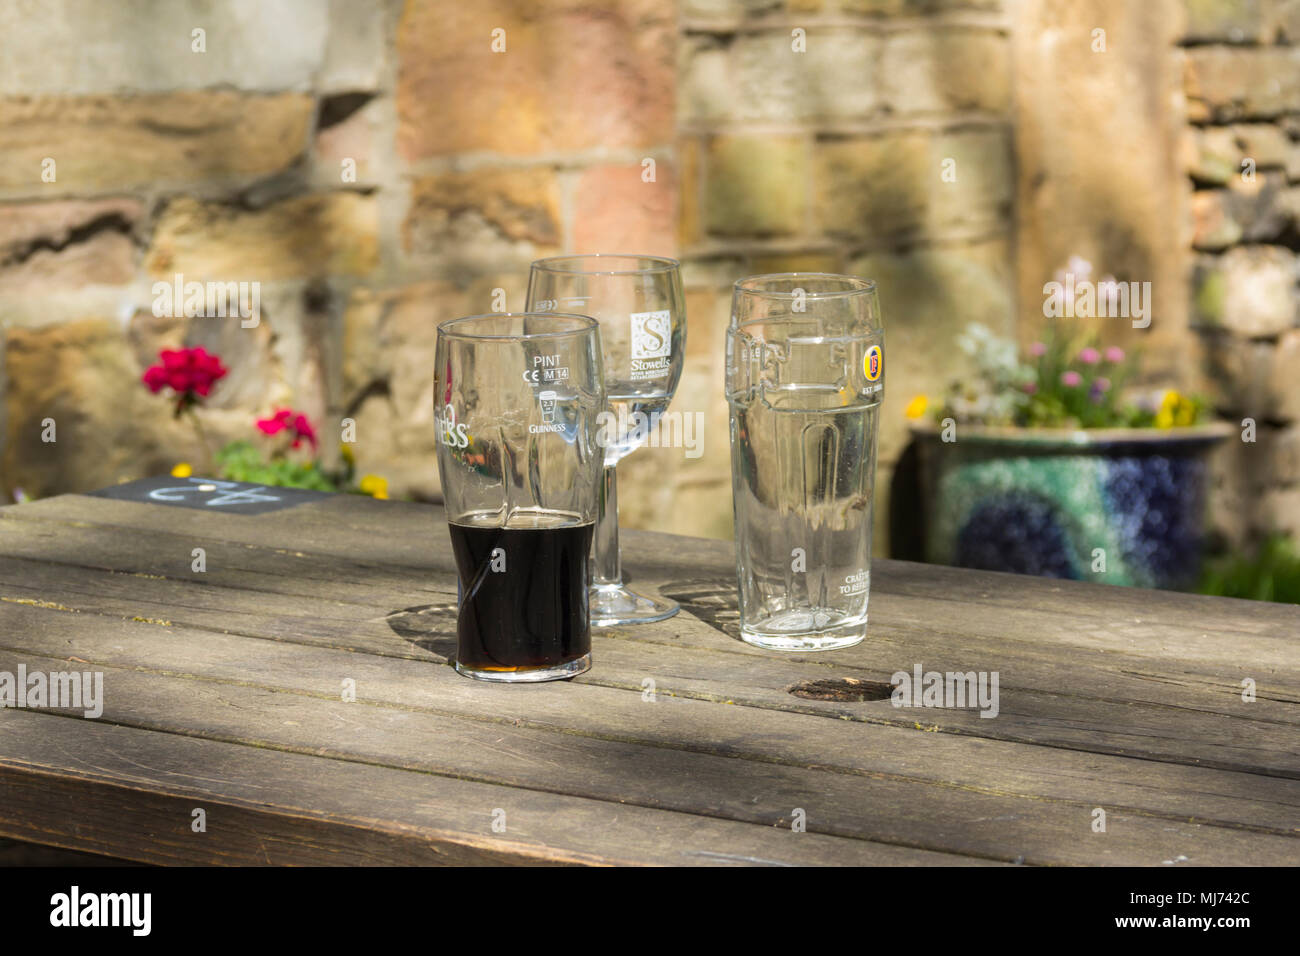 Drei leere oder halb leer Bier- und Weingläser auf einem außerhalb Holz- pub Tabelle in einen Biergarten. Die Gläser sind Marken Guinness, Stowels und fördert Stockfoto